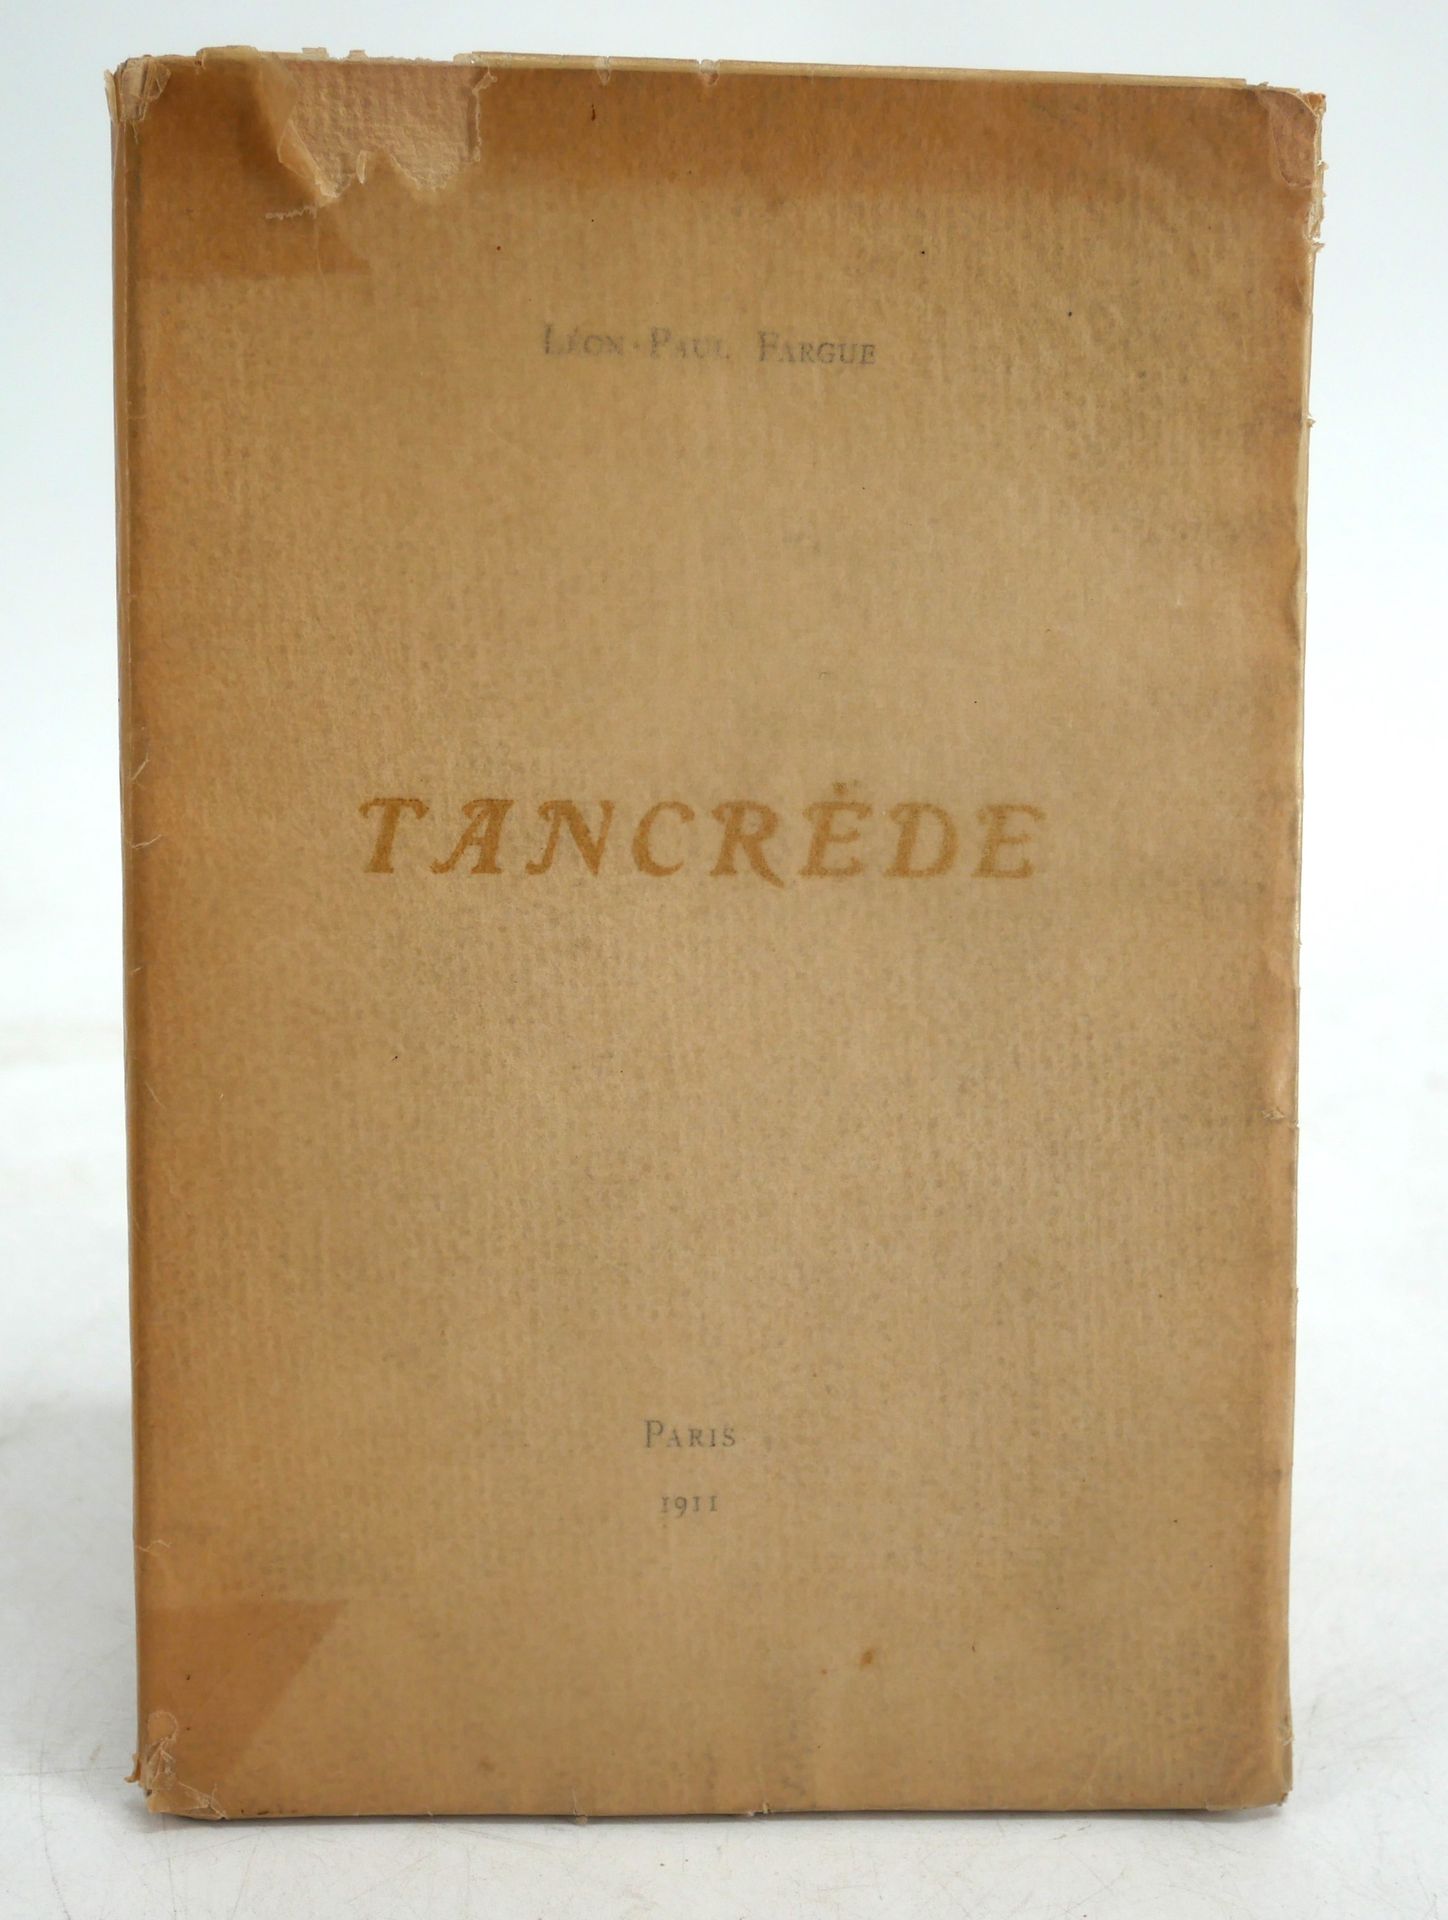 Null LEON PAUL FARGUE.
Tancrède
Sné, [Valery Larbaud], 1911.
Tirage limité à 212&hellip;